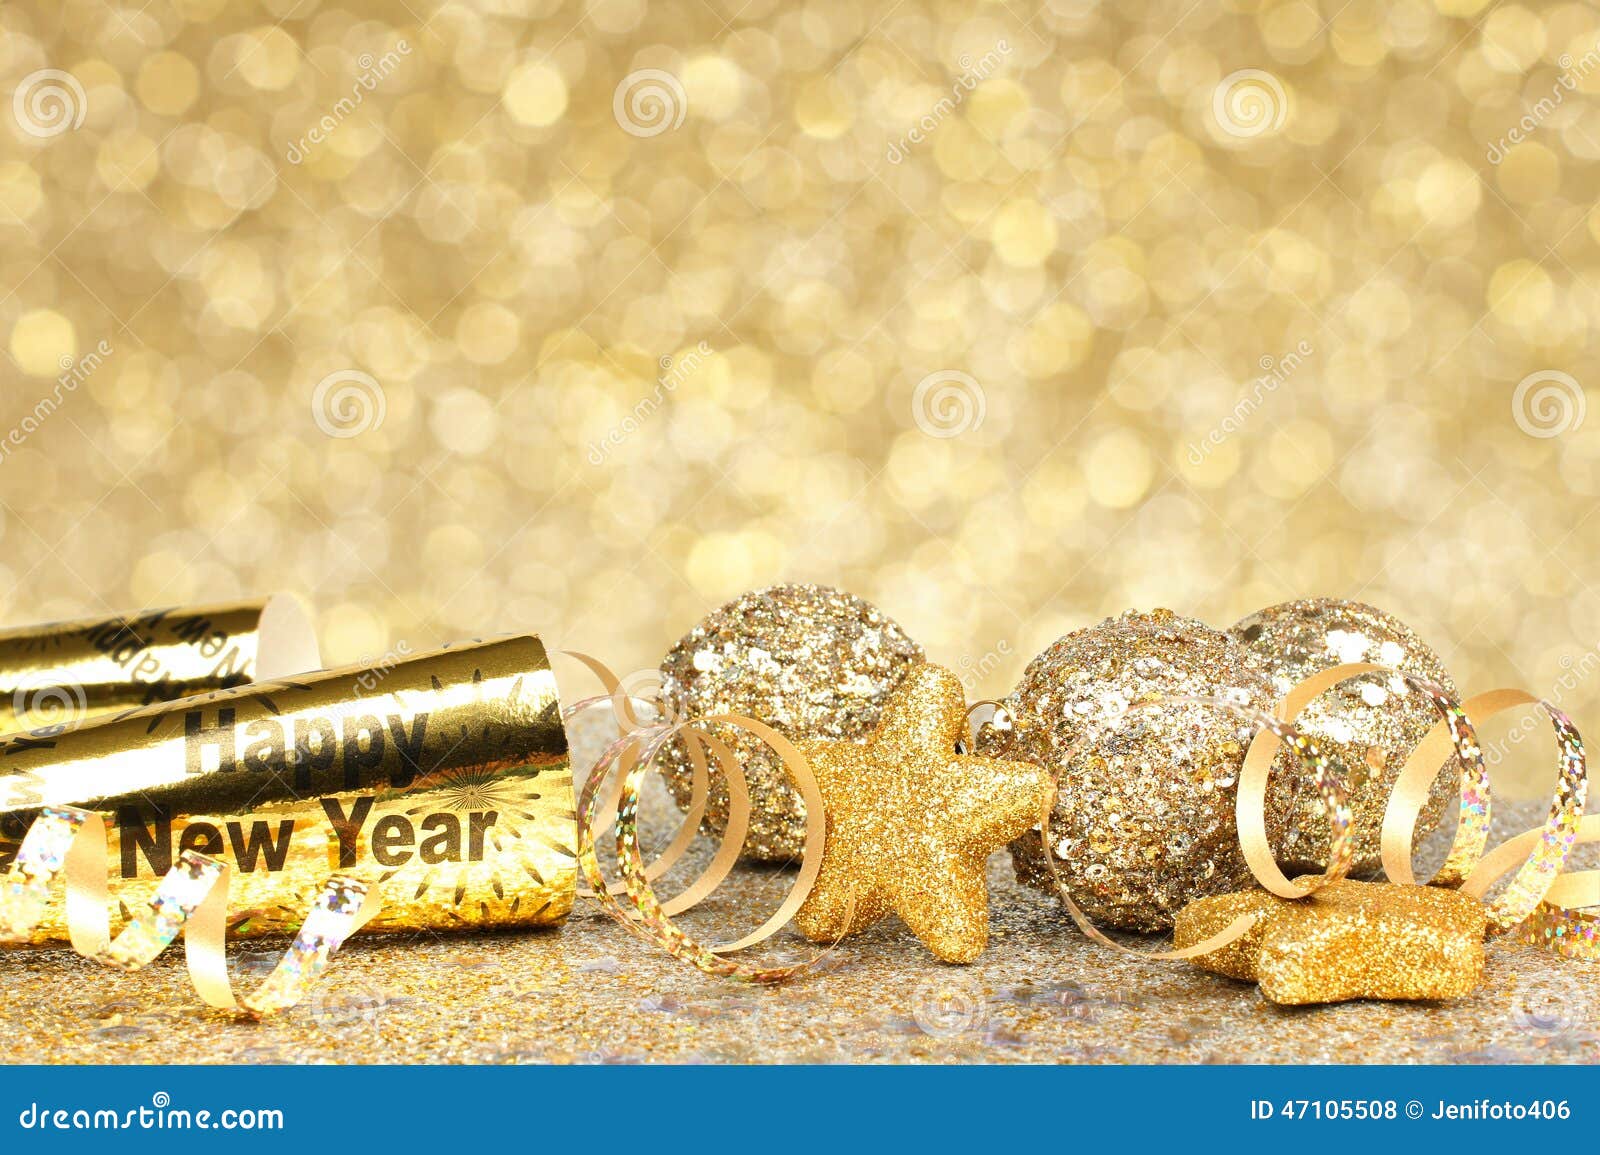 Nếu bạn muốn tạo một không gian rực rỡ và đầy sắc màu cho tiệc năm mới, thì nền tảng Tiệc năm mới vàng rực rỡ là lựa chọn hoàn hảo cho bạn. Với những hình ảnh đầy hoa vàng và đèn lấp lánh, tiệc của bạn sẽ trở nên lung linh và ấn tượng hơn bao giờ hết. Hãy cùng xem những hình ảnh tuyệt đẹp này và sẵn sàng cho tiệc năm mới của bạn!